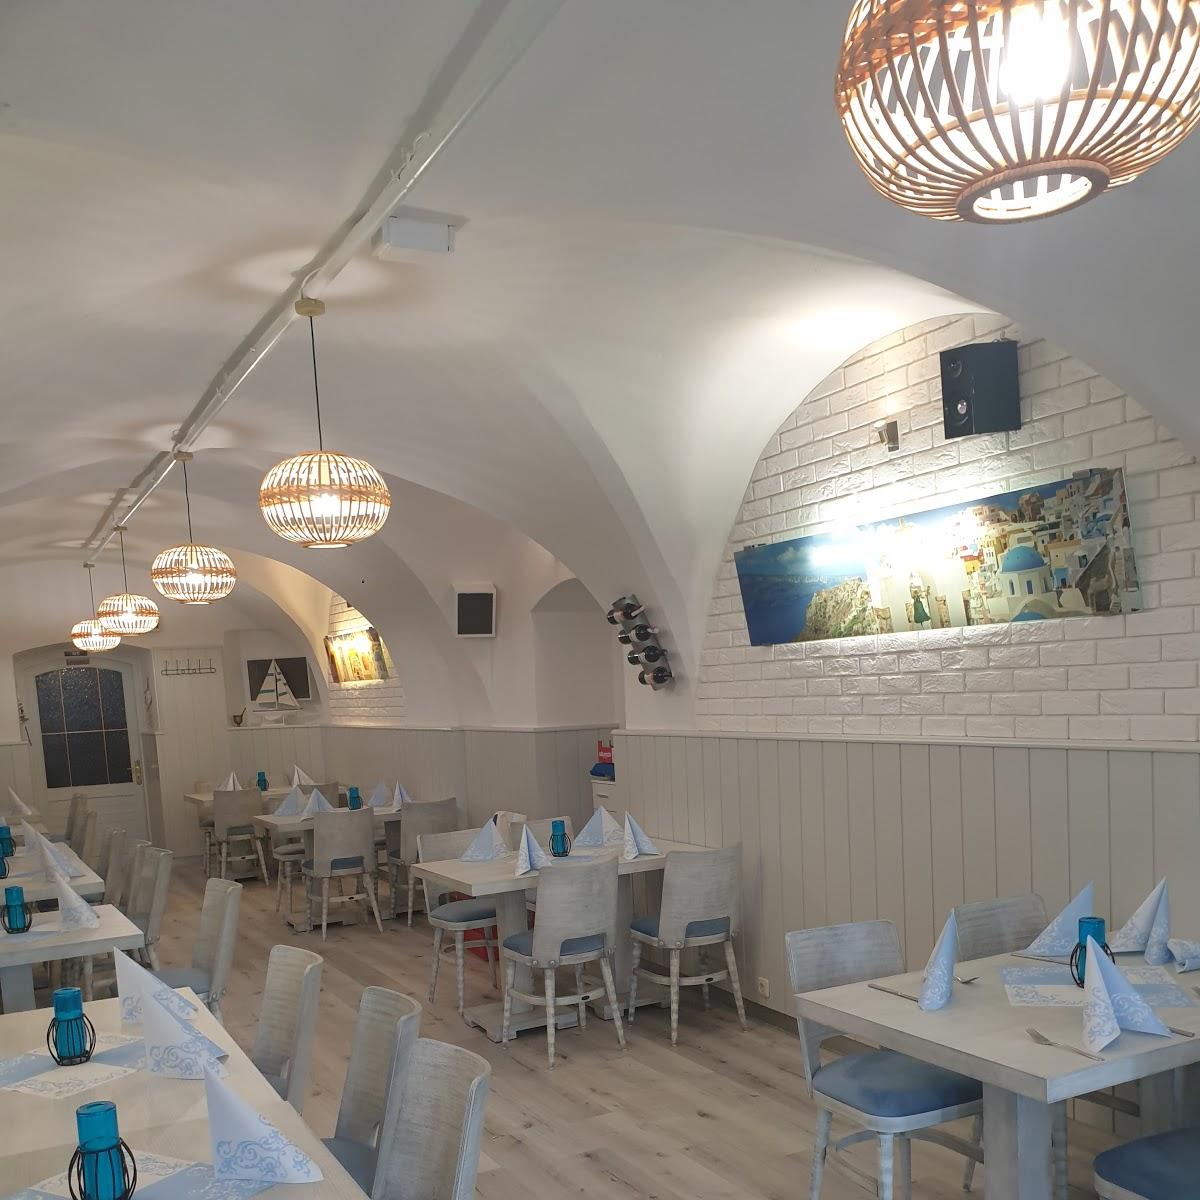 Restaurant "Taverna Filotimo Griechische Spezialitäten" in Stockerau